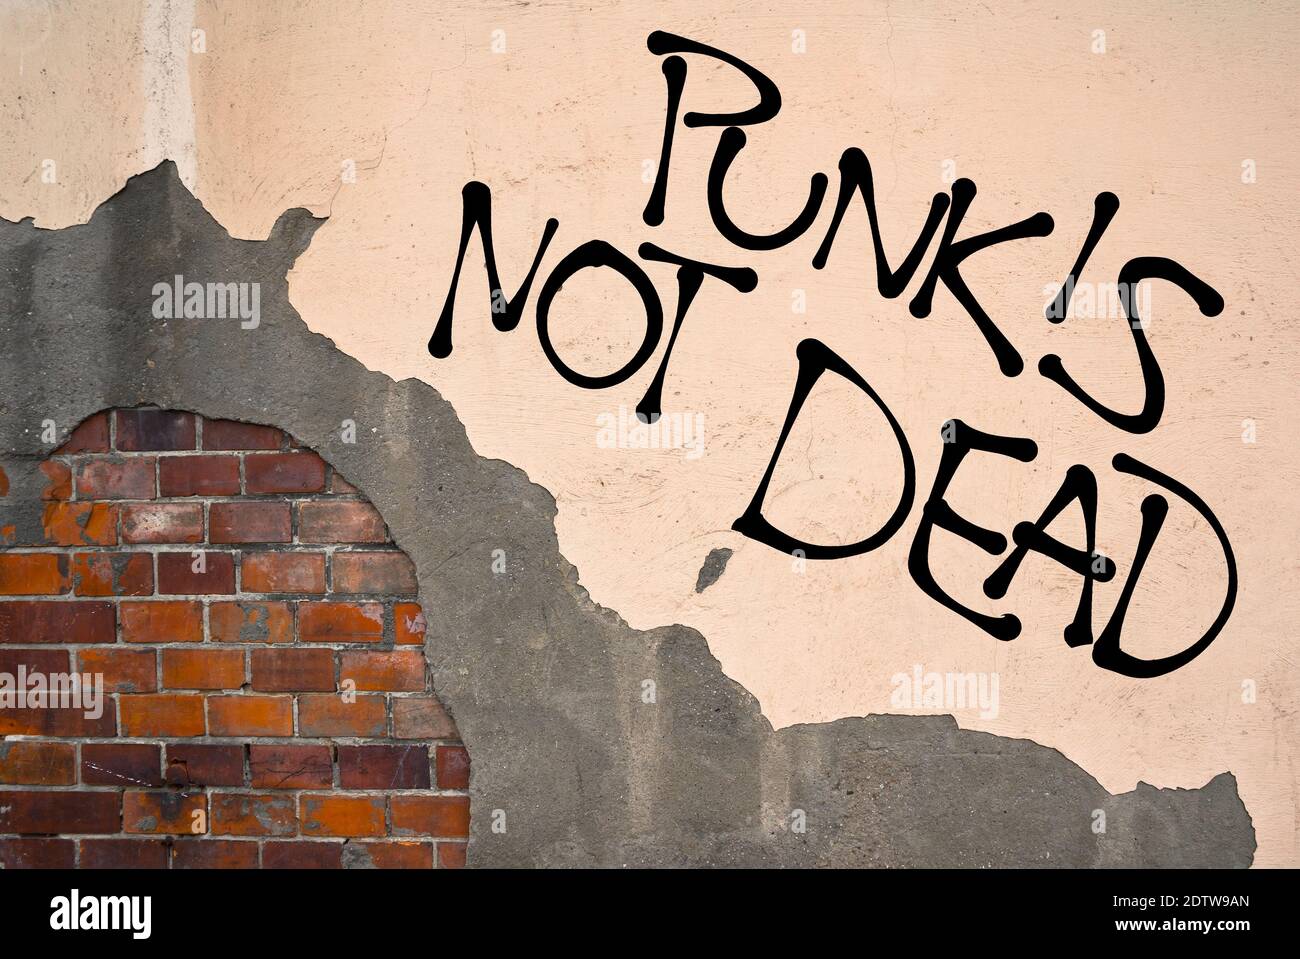 Graffiti scritti a mano Punk non è morto spruzzato sul muro, estetica anarchica. Appello a subculture alternative Foto Stock